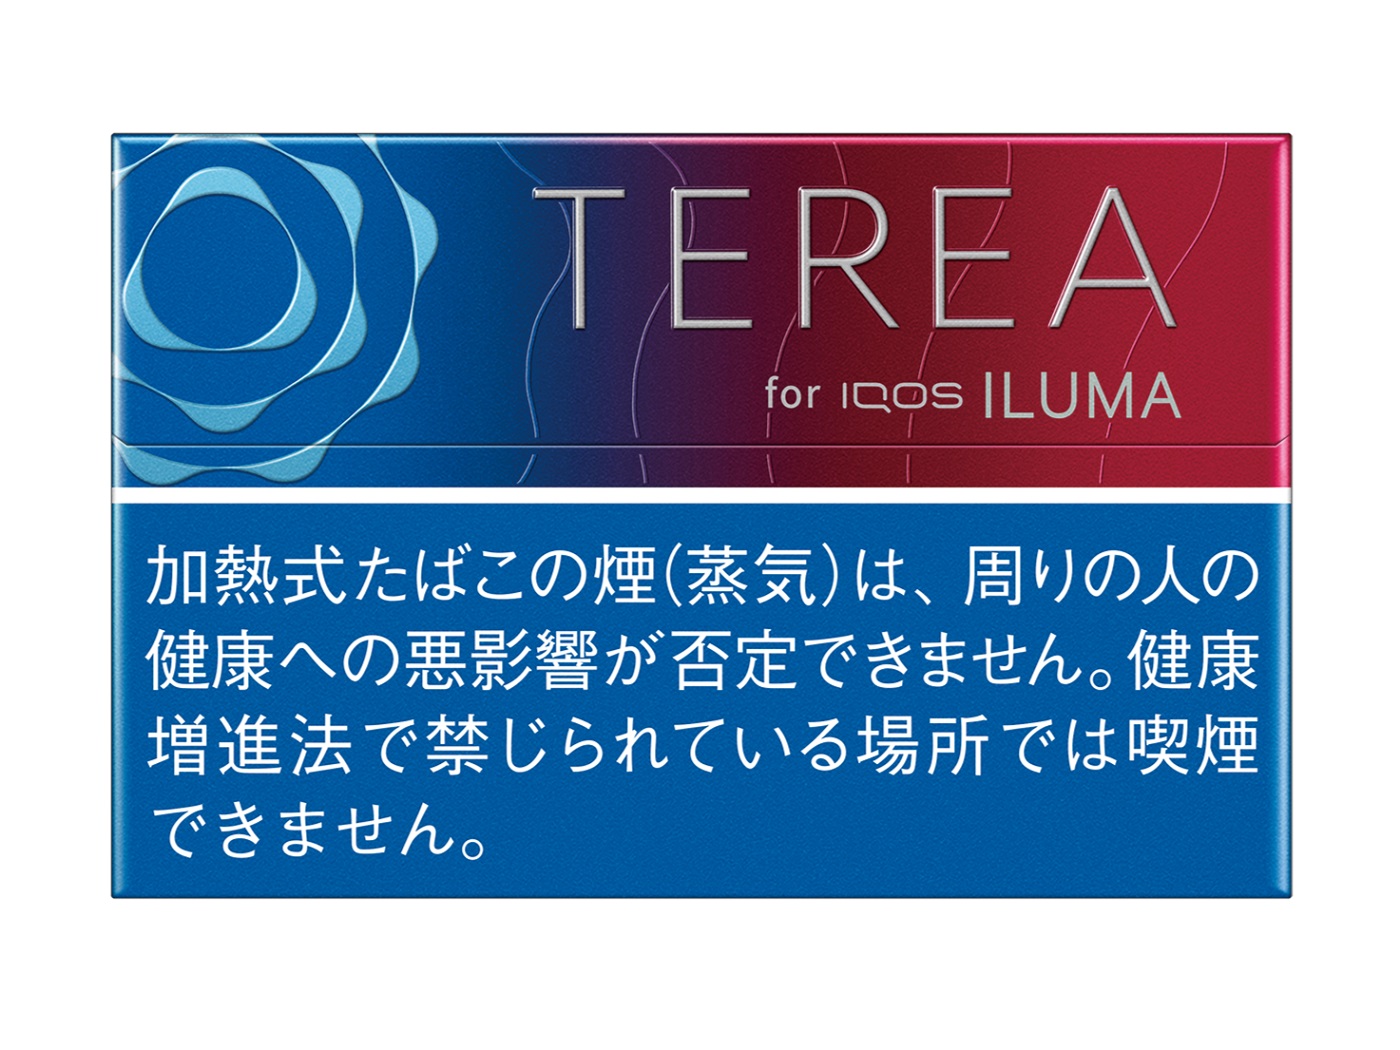 TEREA_Ruby_Regular.jpg